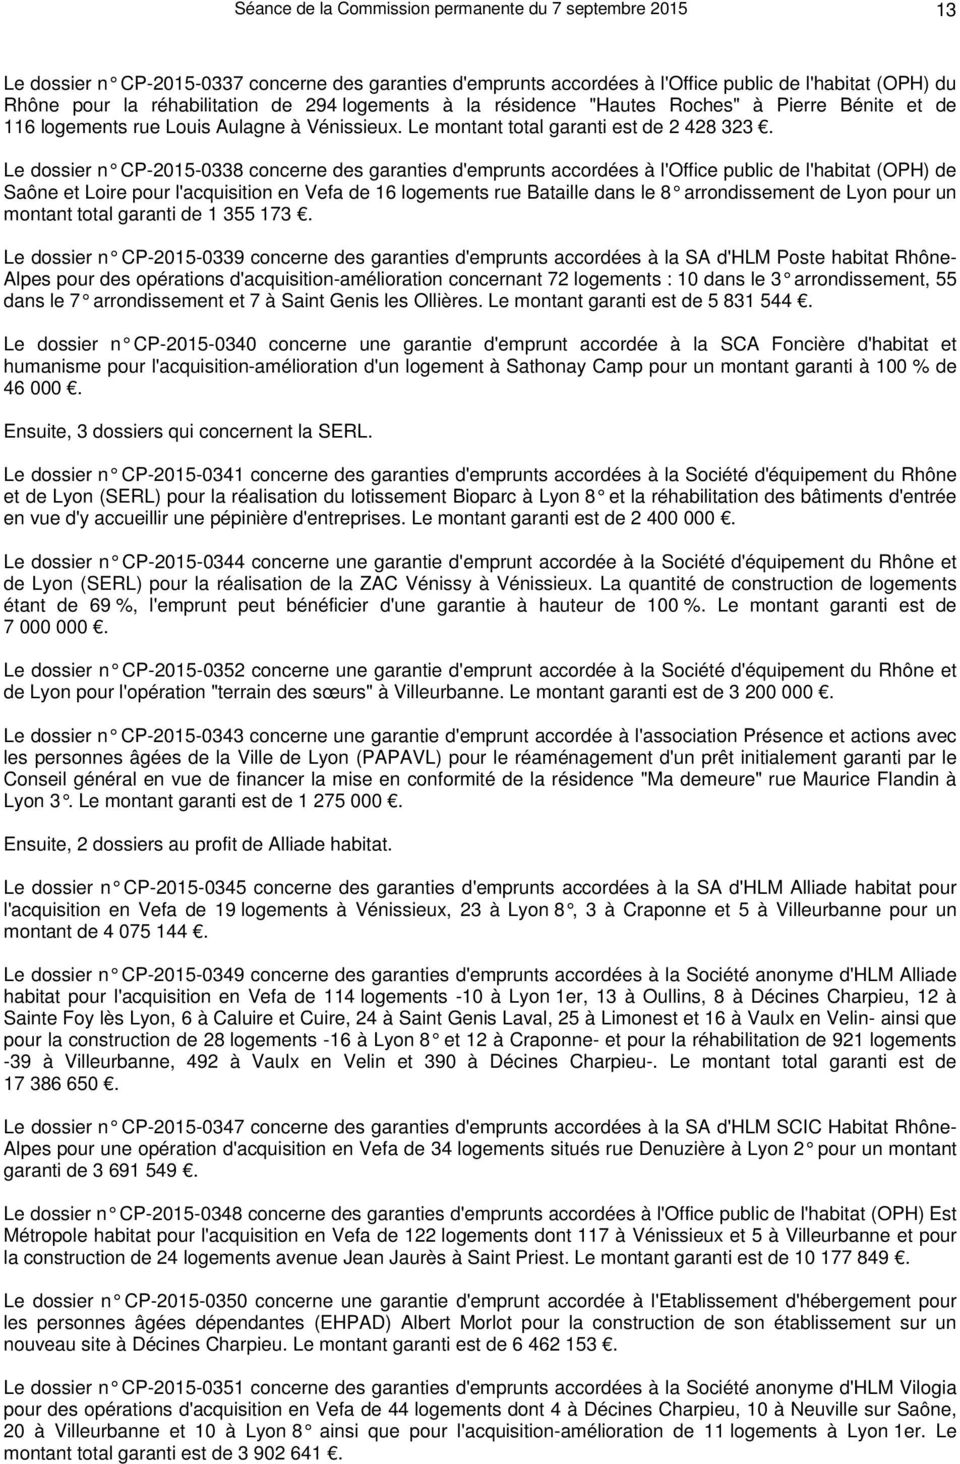 Le dossier n CP-2015-0338 concerne des garanties d 'emprunts accordées à l'office public de l'habitat (OPH) de Saône et Loire pour l'acquisition en Vefa de 16 logements rue Bataille dans le 8